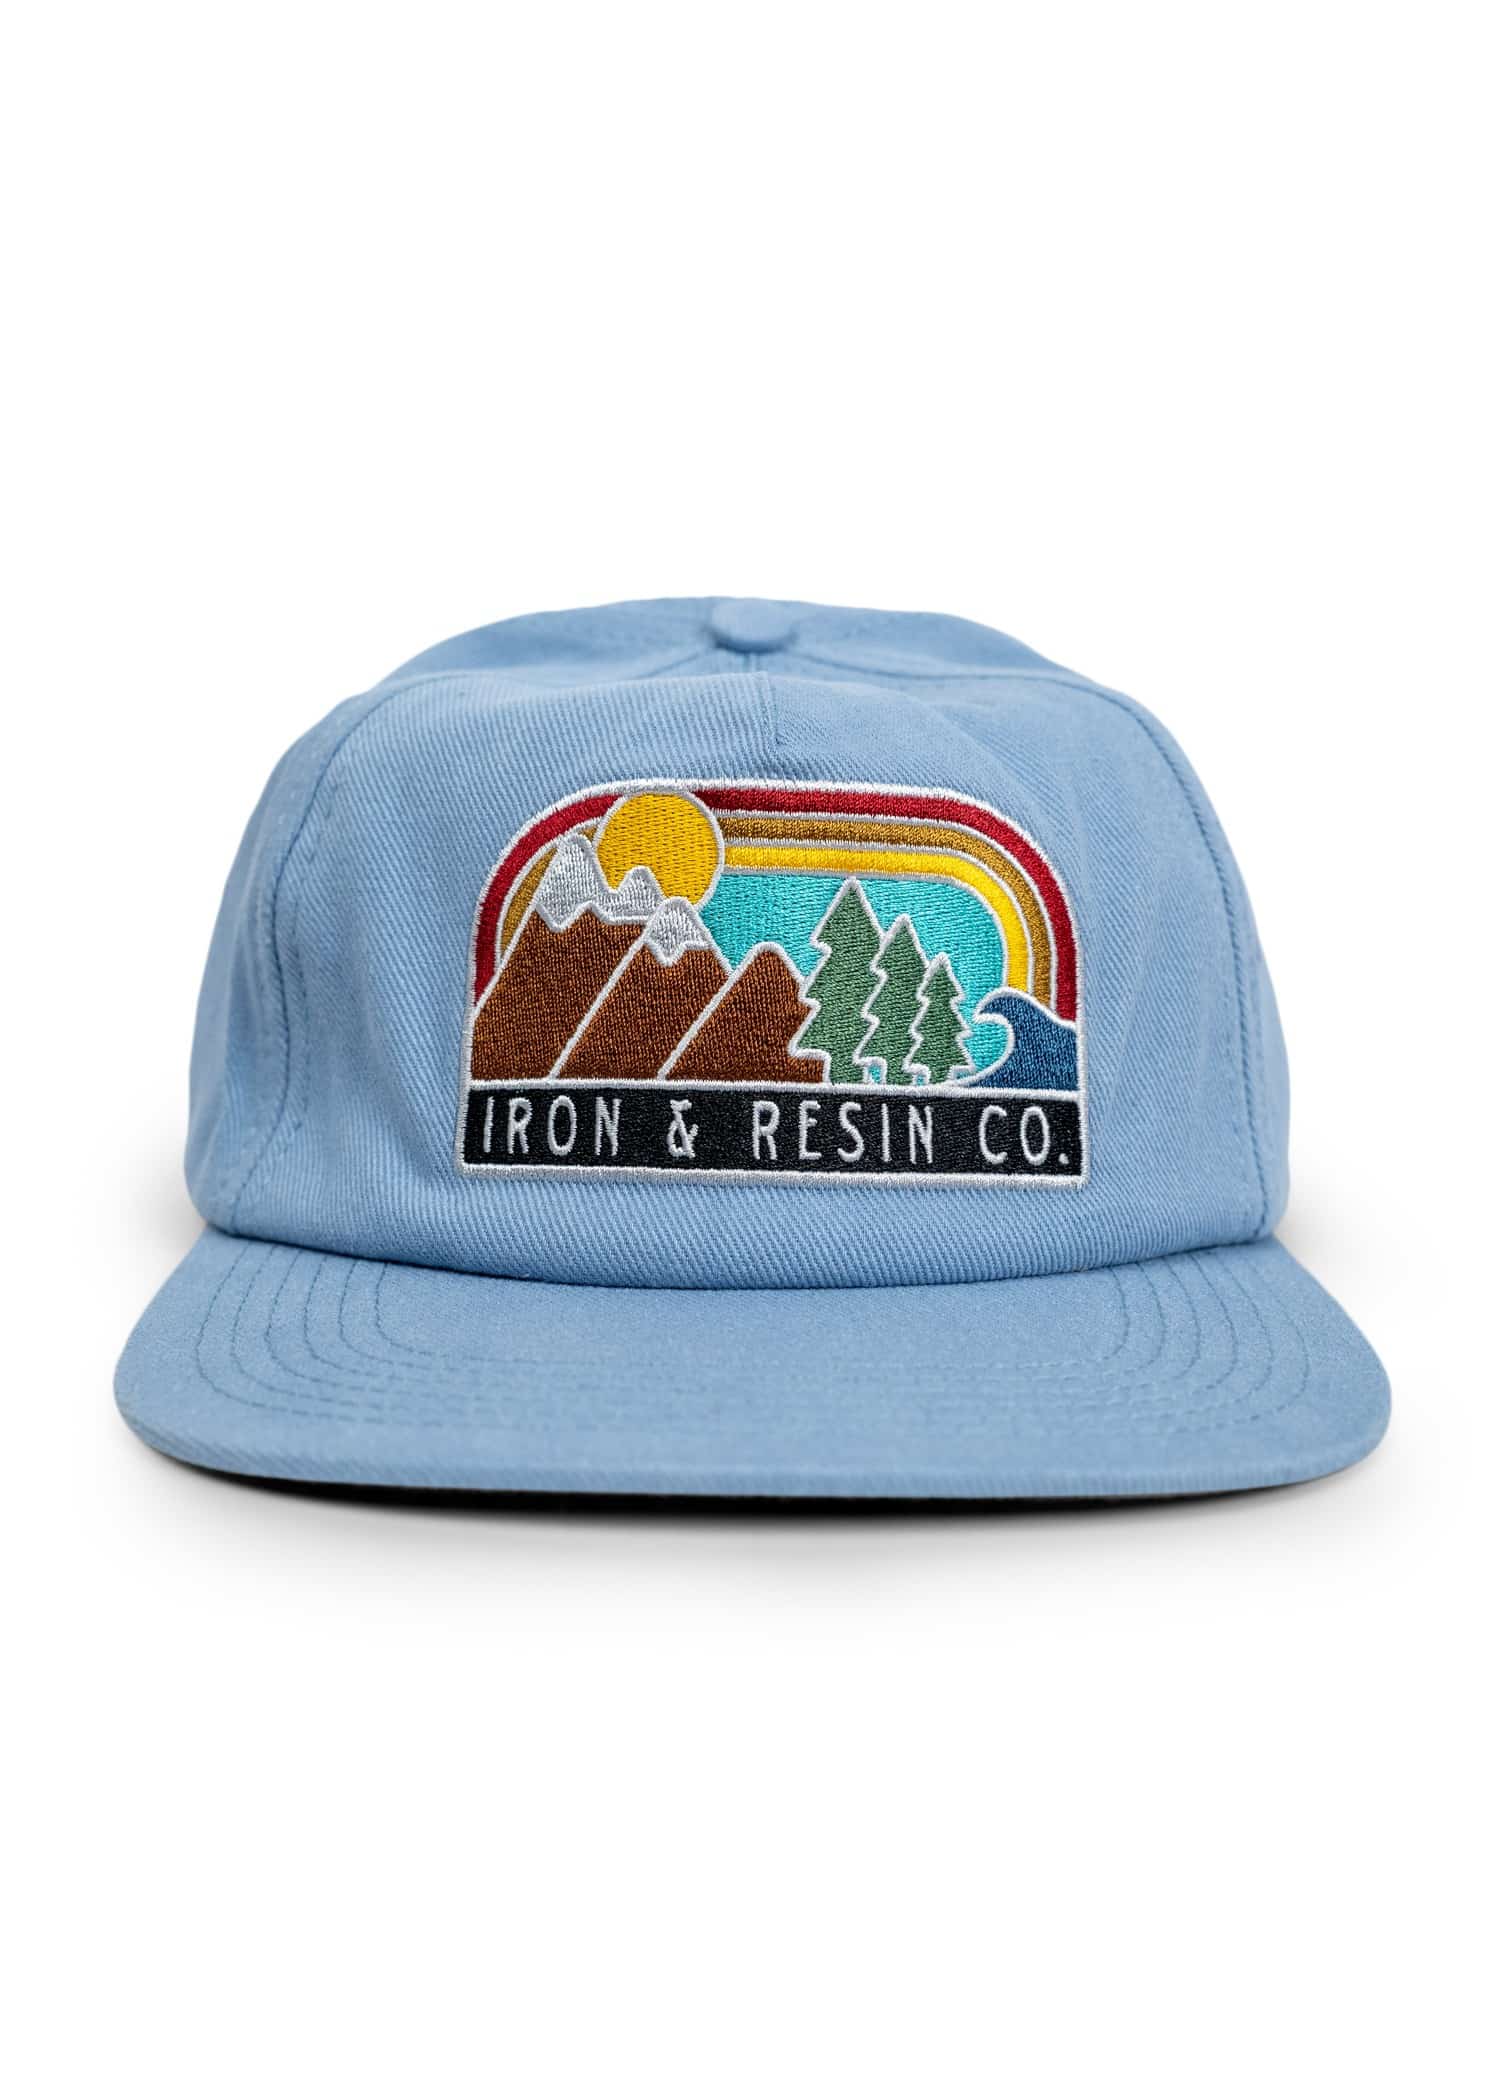 Landscape hat - Produits a traiter